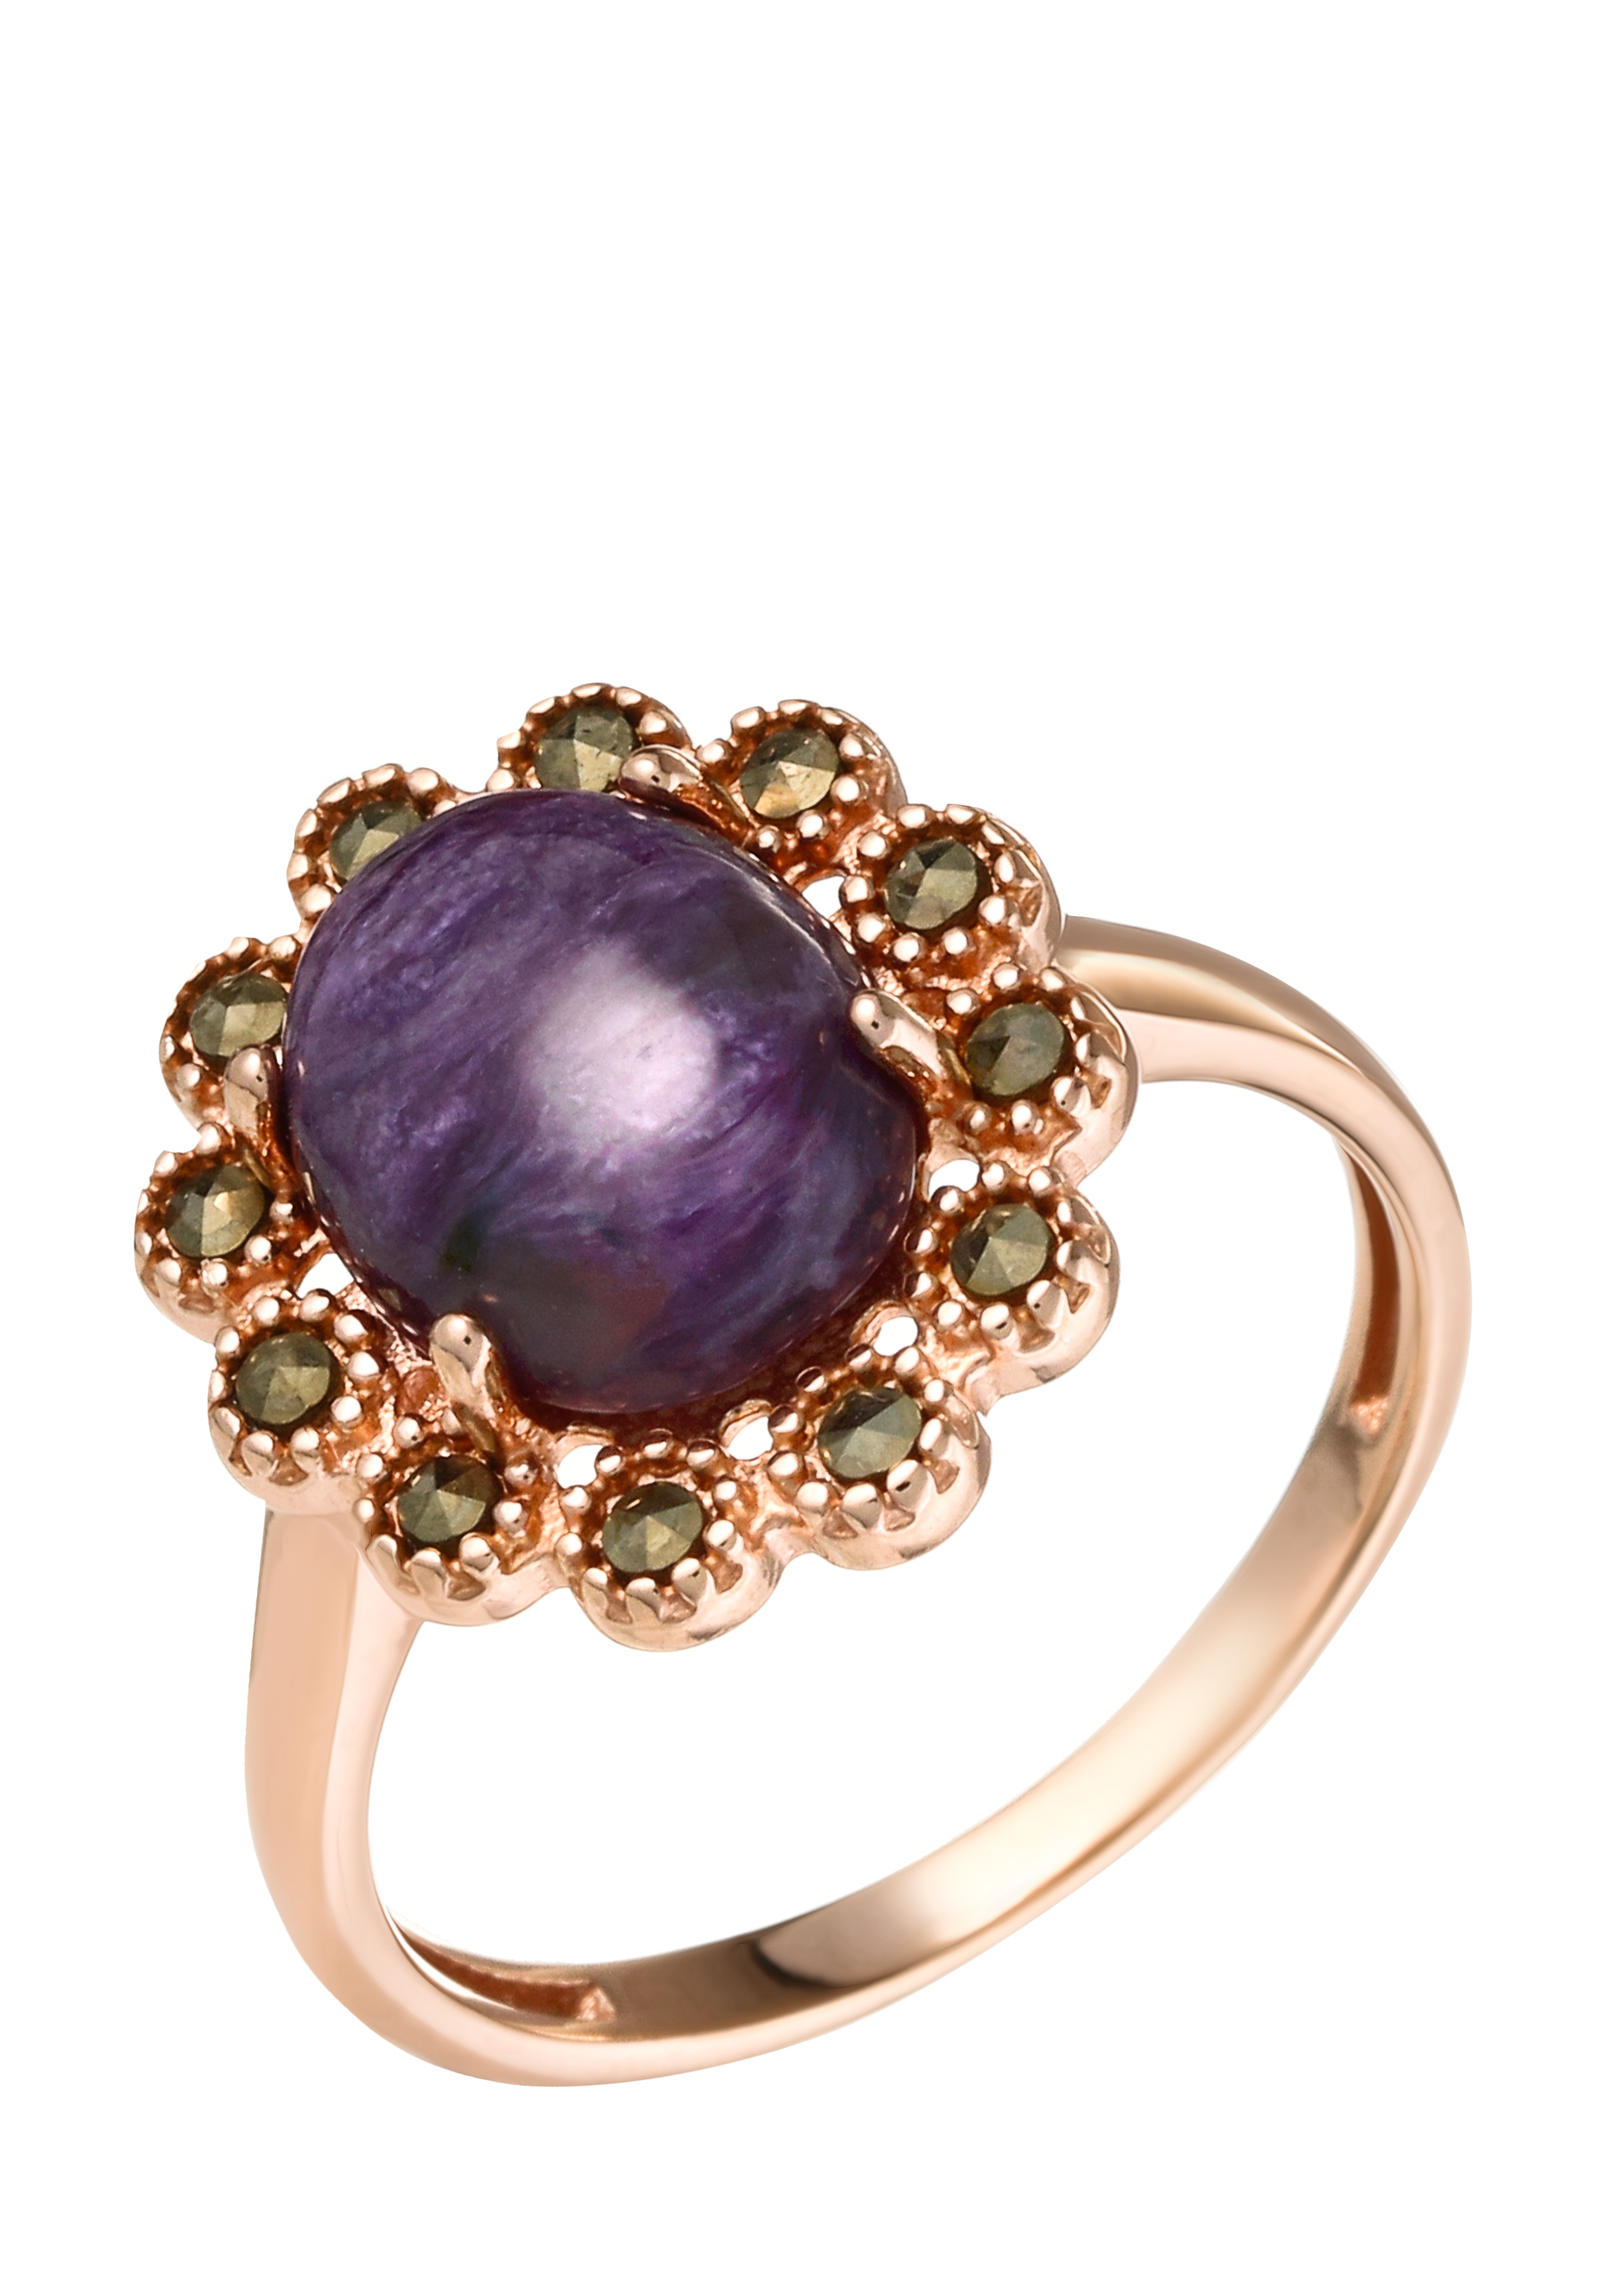 Кольцо серебряное "Загадочный флёр" Серебряный Дом, цвет фиолетовый, размер 18 перстень - фото 1